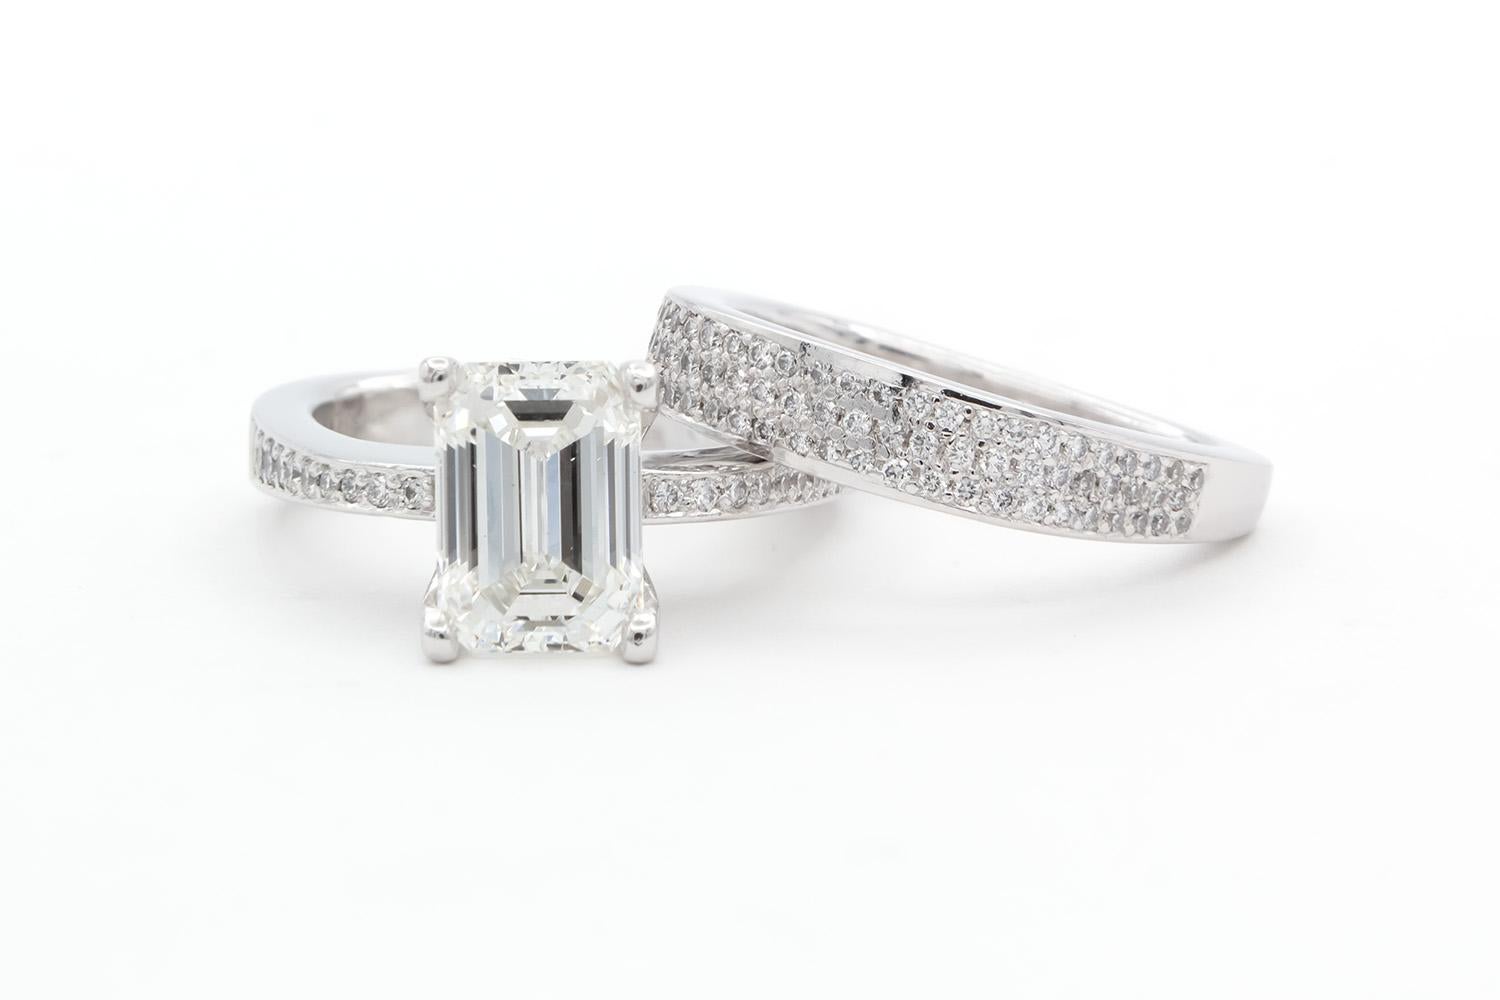 Wir freuen uns, diese Stuart Moore GIA zertifiziert Platin & Smaragdschliff Diamant Verlobungsring Set bieten. Dieses wunderschöne Verlobungsset besteht aus einem GIA-zertifizierten 2,14ct F/VS2-Diamanten im Smaragdschliff, der von geschätzten